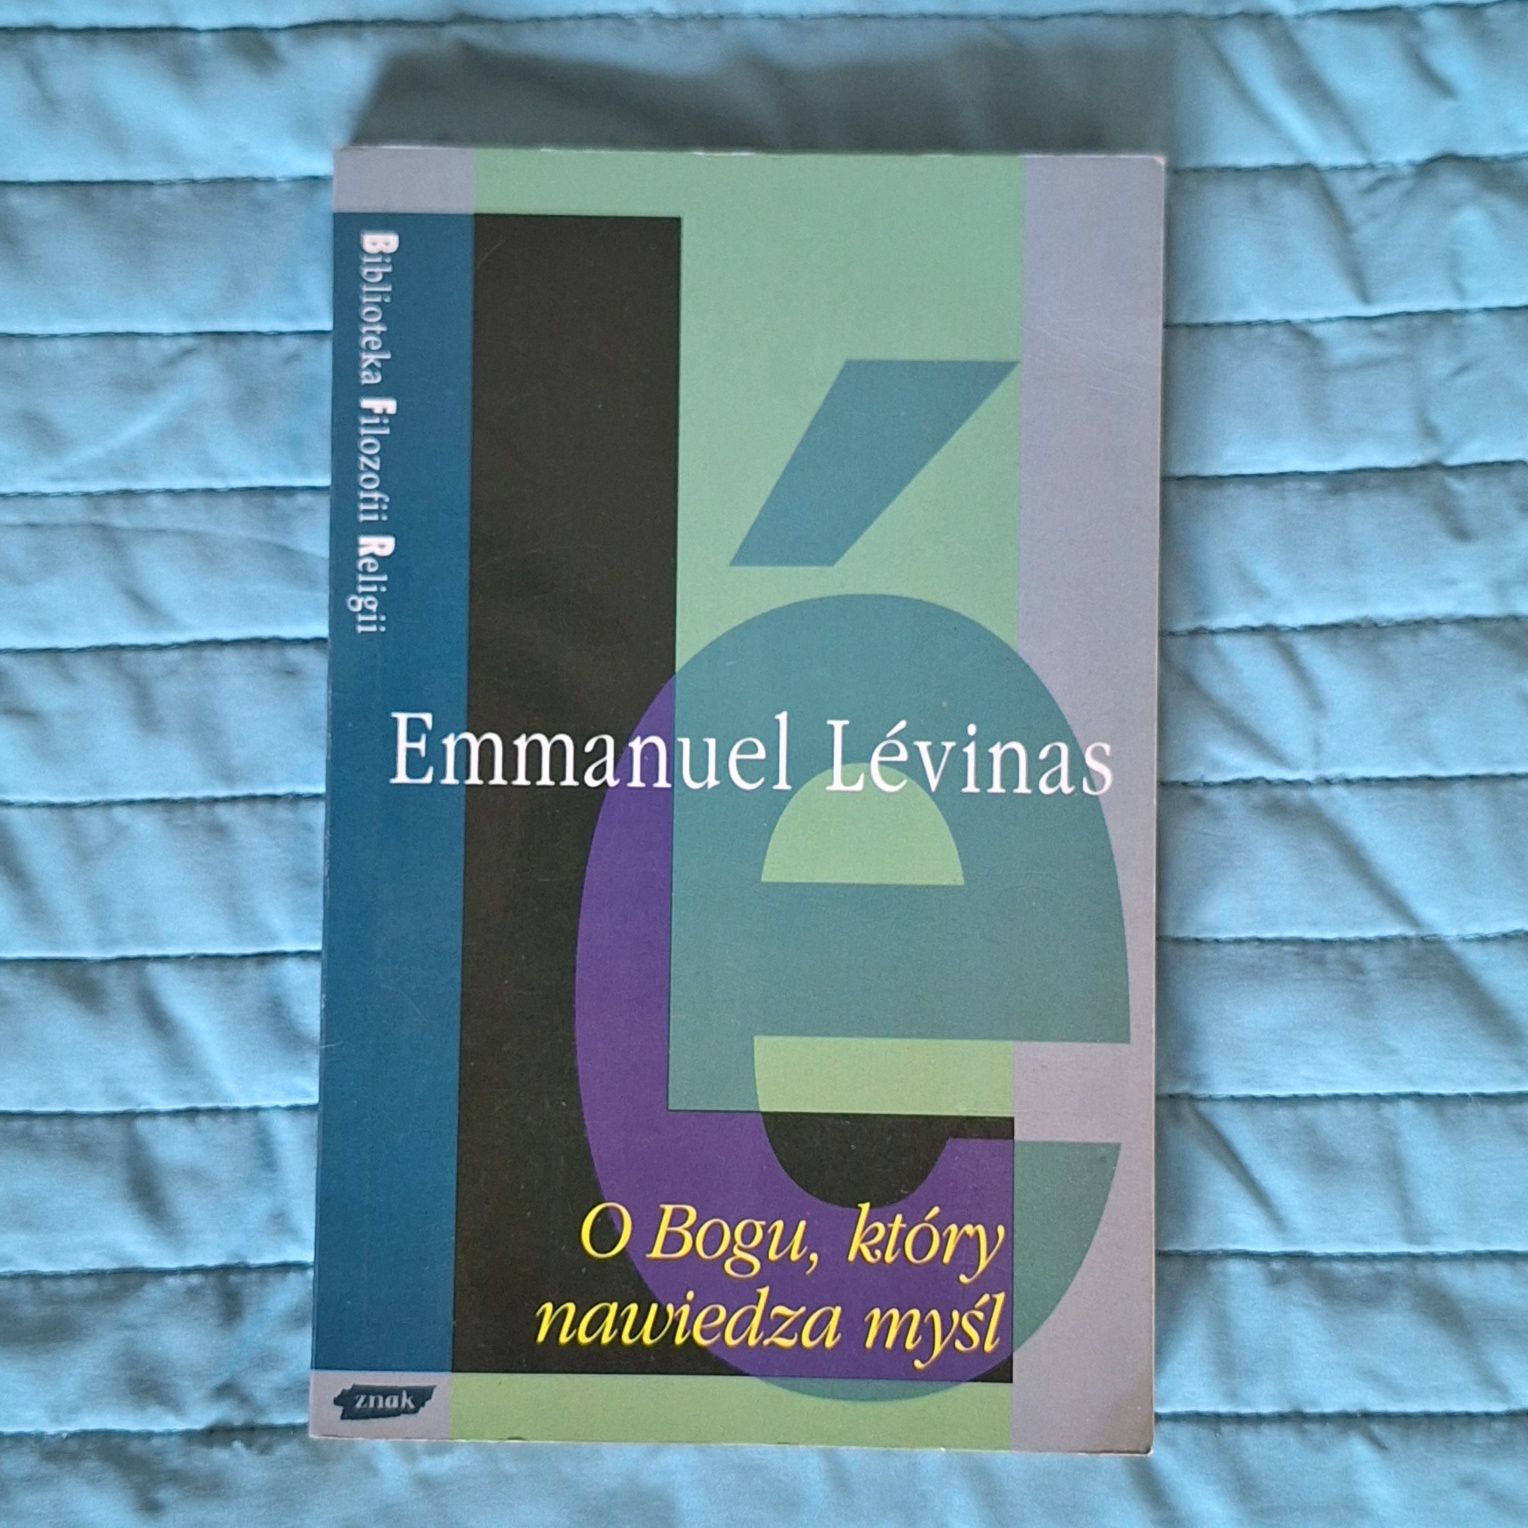 Emanuel Lévinas O Bogu, który nawiedza myśl